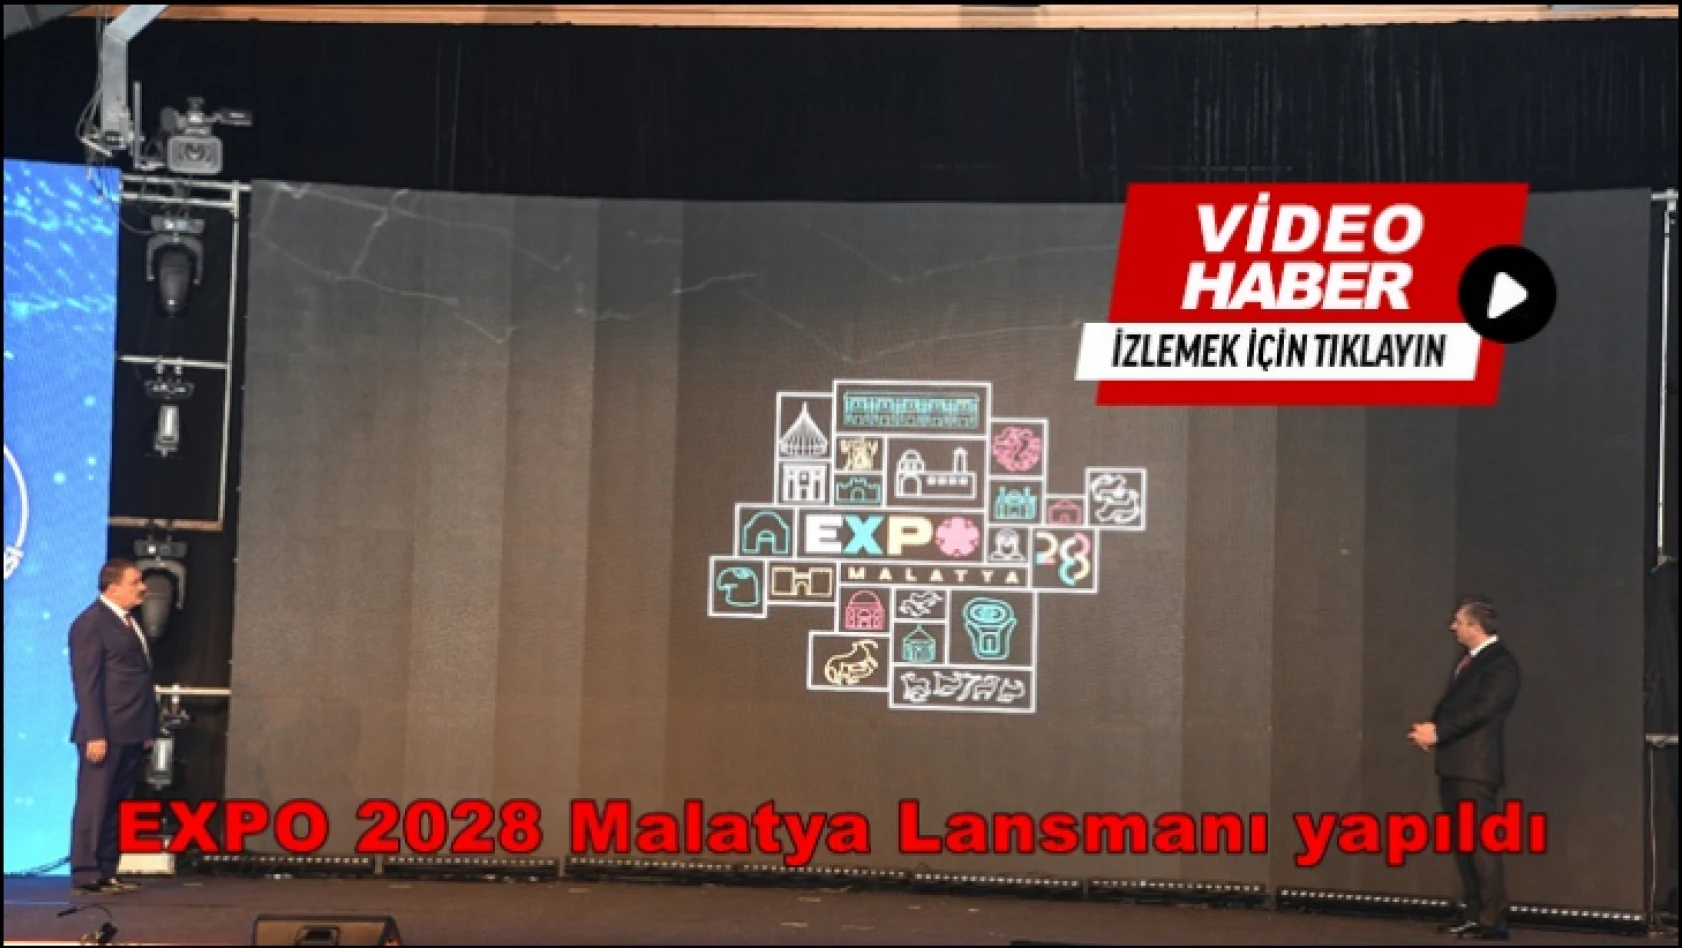 EXPO 2028 Malatya Lansmanı yapıldı